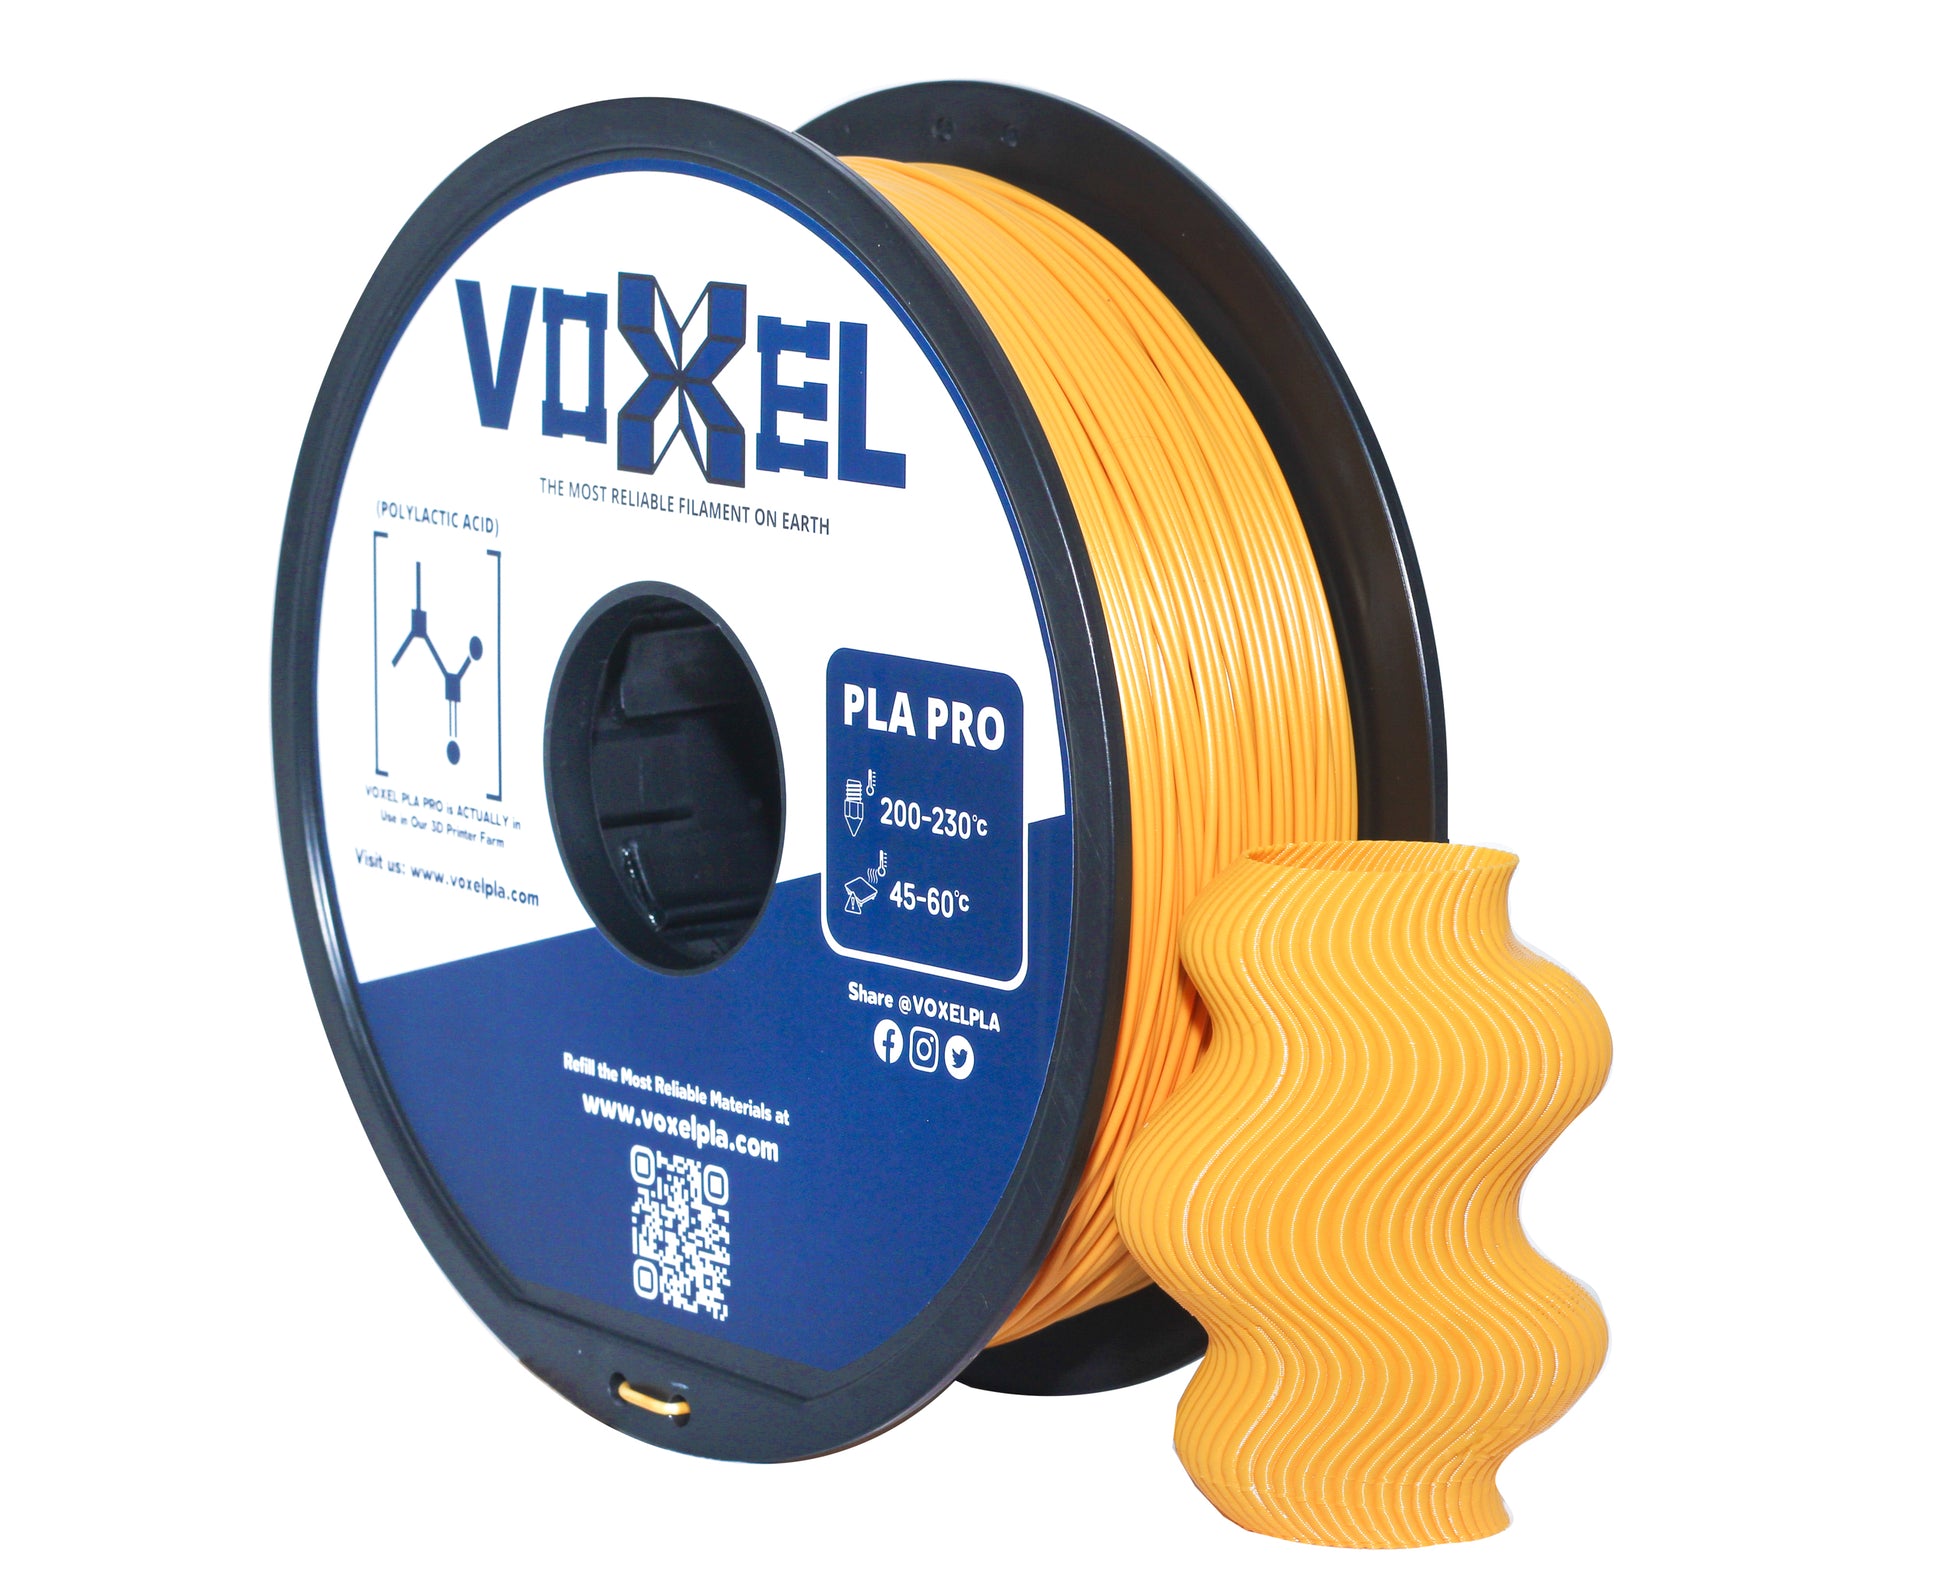 VOXELPLA PLA Plus Gold Filament - $16.99 1.75mm for FDM 3D Printer